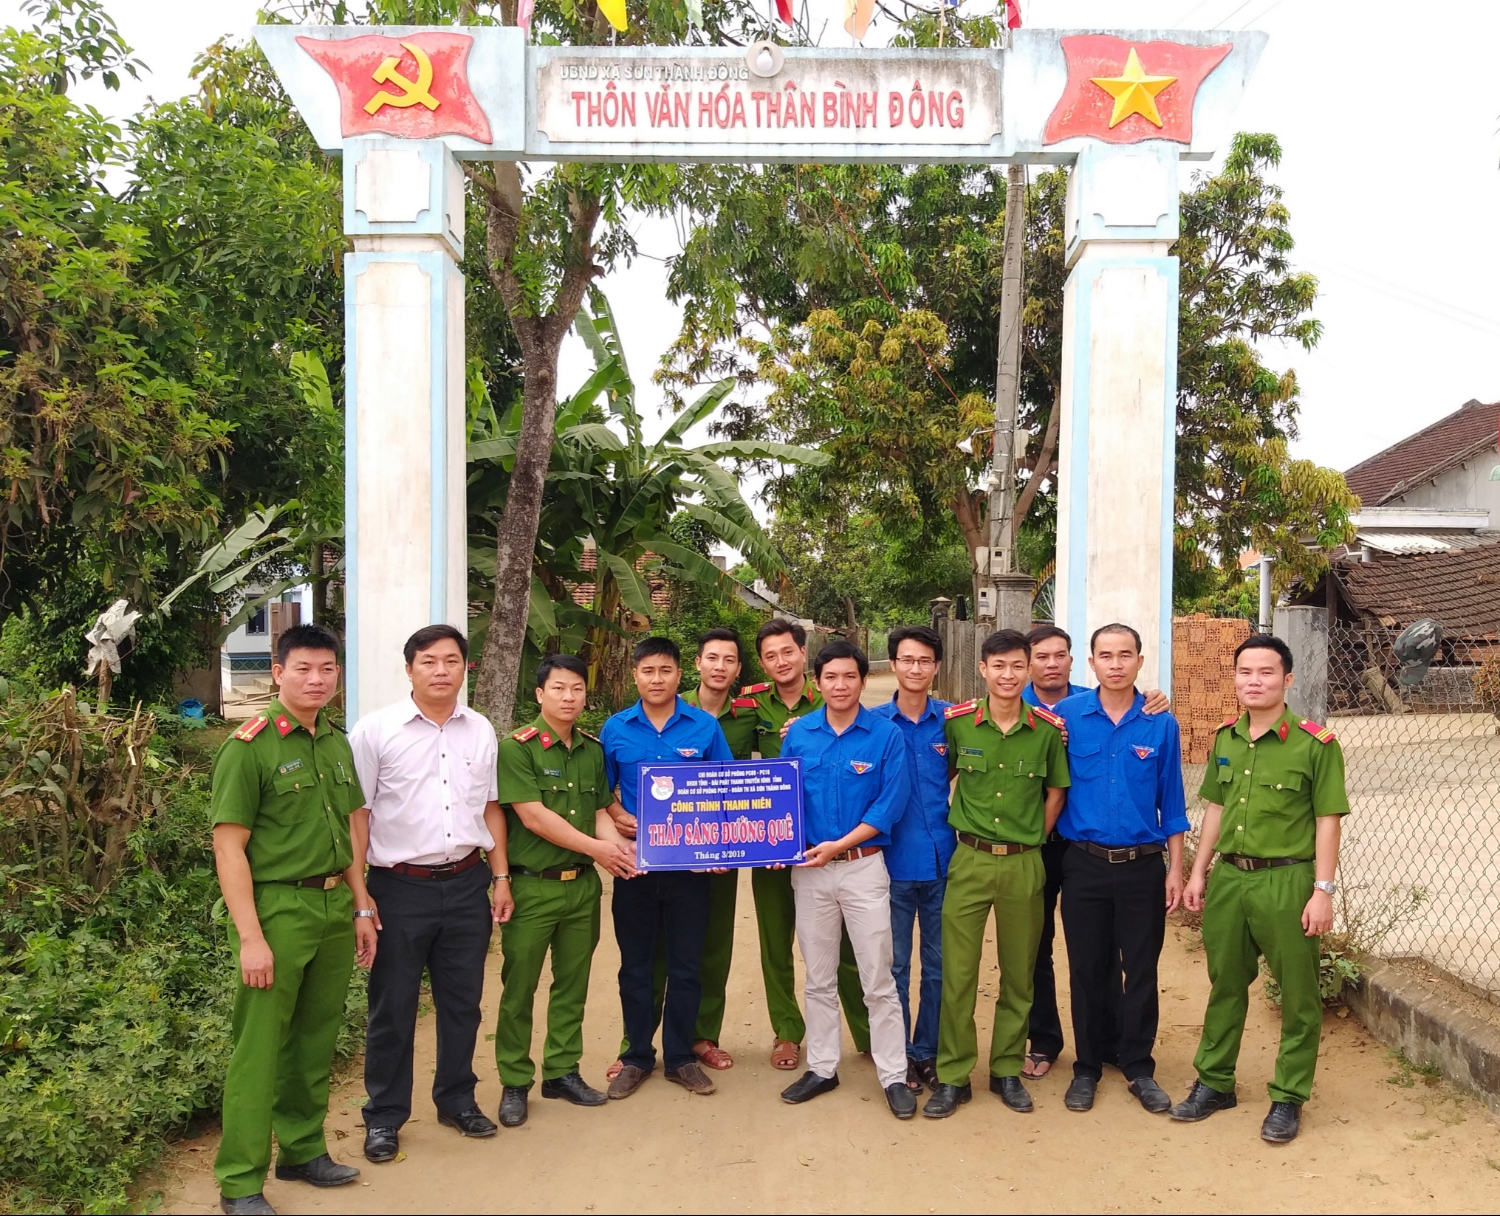 Bàn giao công trình "Thắp sáng đường quê" tại thôn Thân Bình Đông, xã Sơn Thành Đông, huyện Tây Hòa